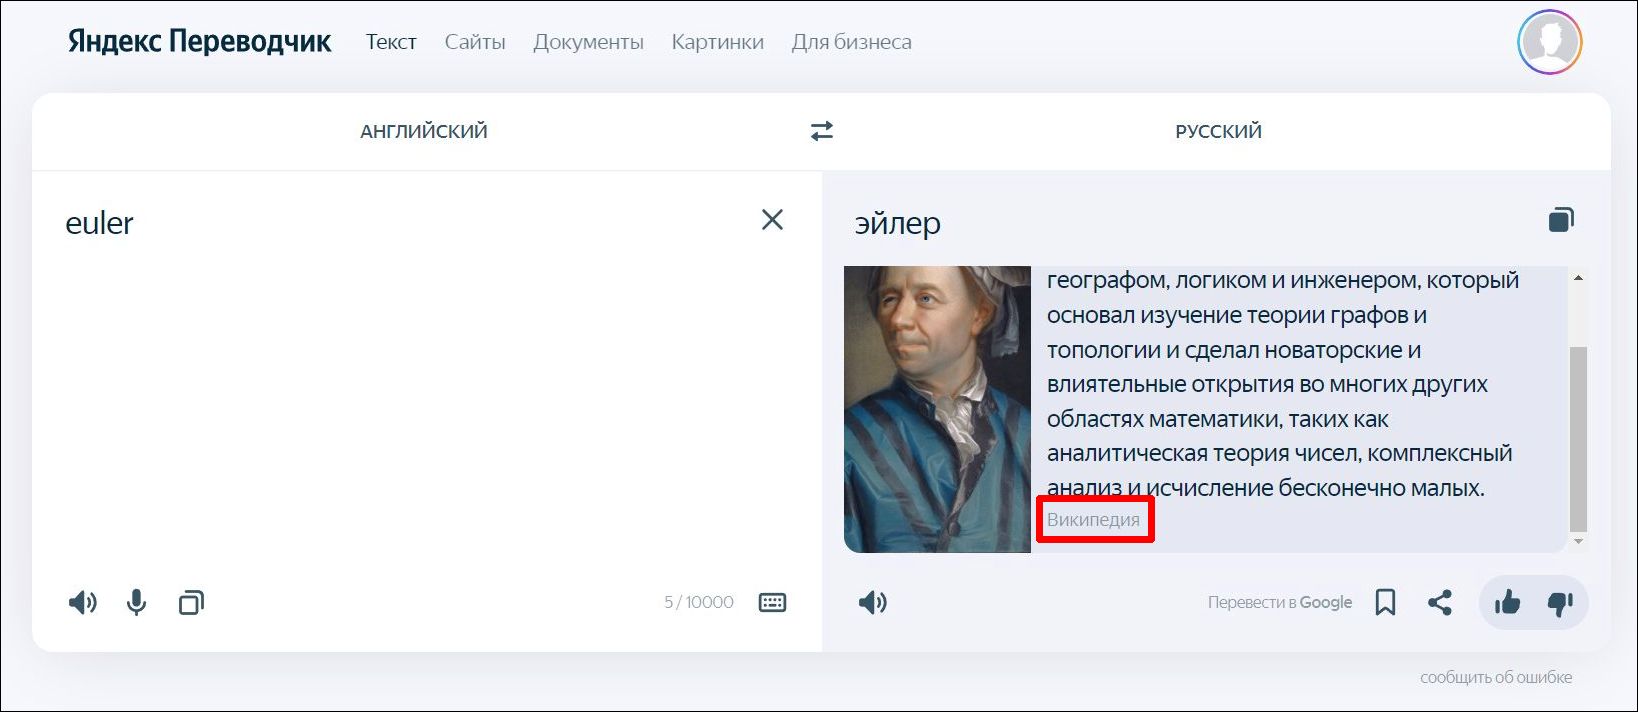 Как скрестись англо-русский словарь с Википедией